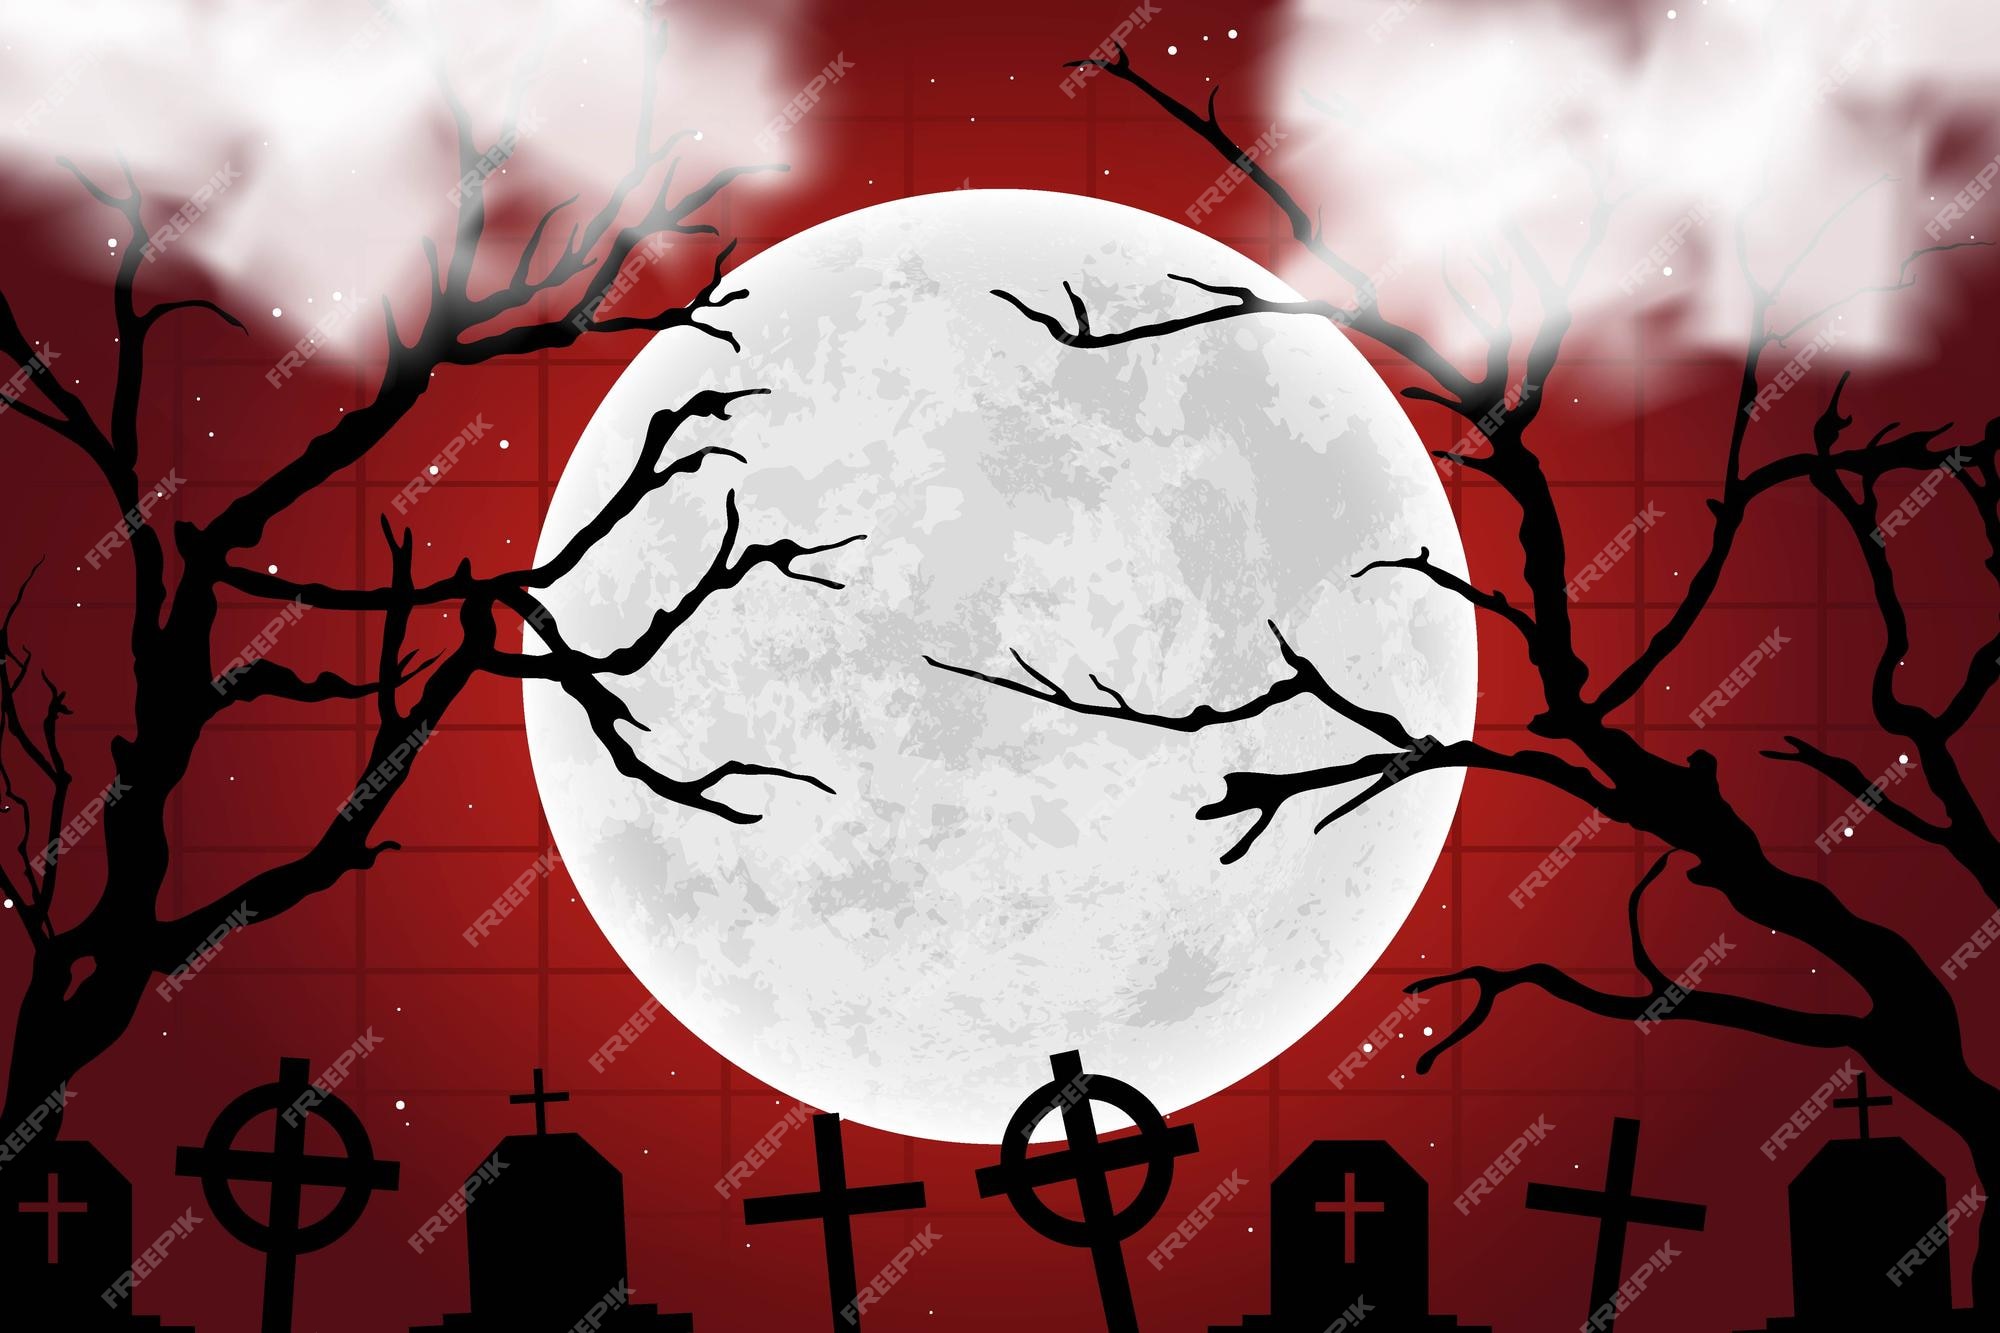 Metalen lijn kunst In Premium Vector | Moon on cemetery red terror scary halloween style template  background creepy wallpaper banner design